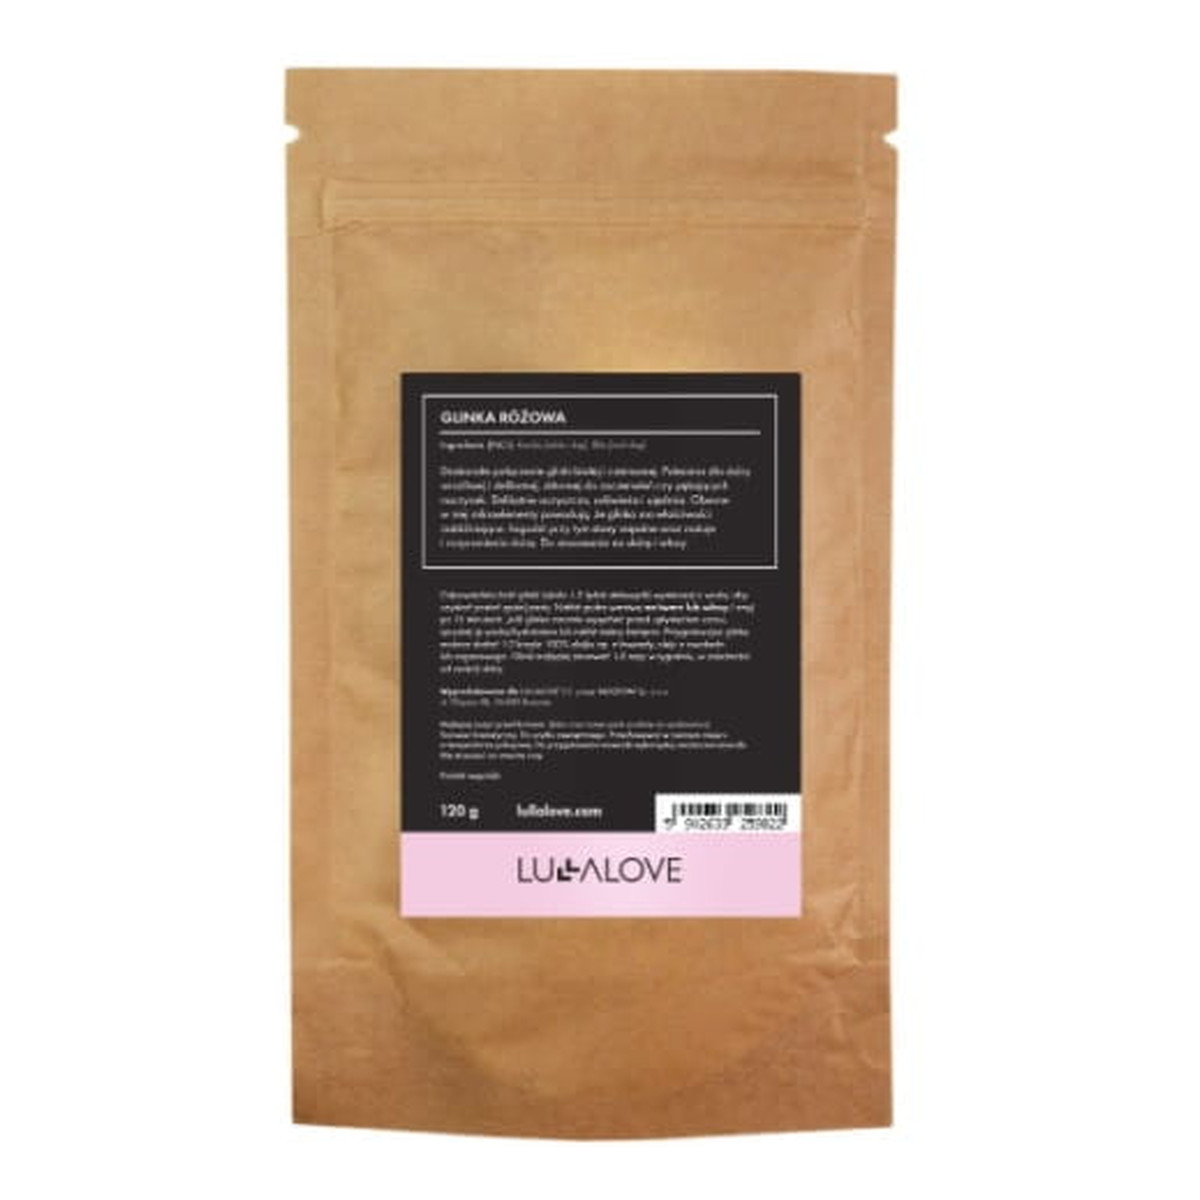 Lullalove Naturalna glinka różowa - łagodne oczyszczenie i nawilżenie 120g